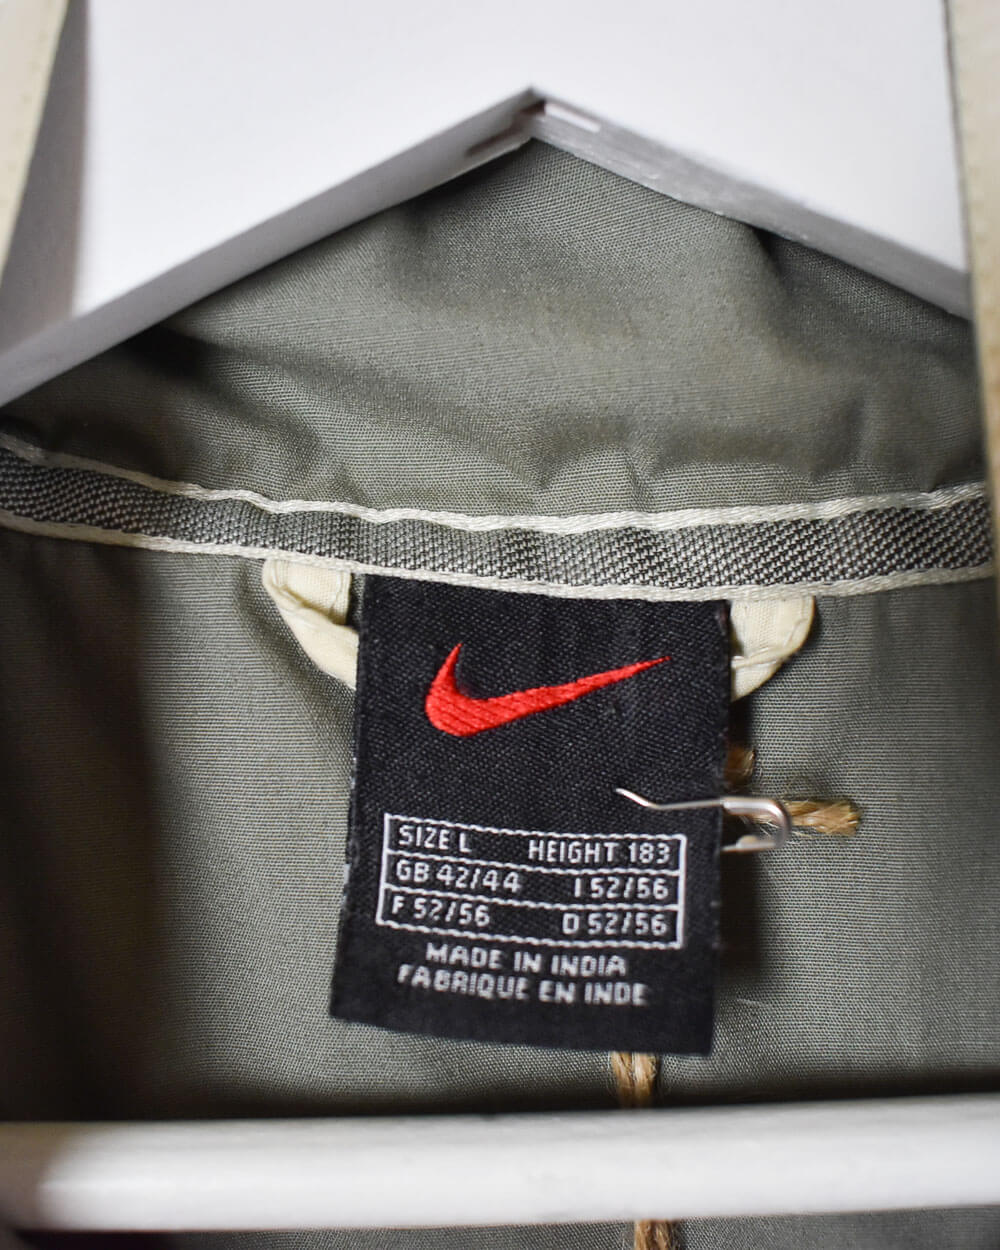 Neutral Nike Jacket - Large